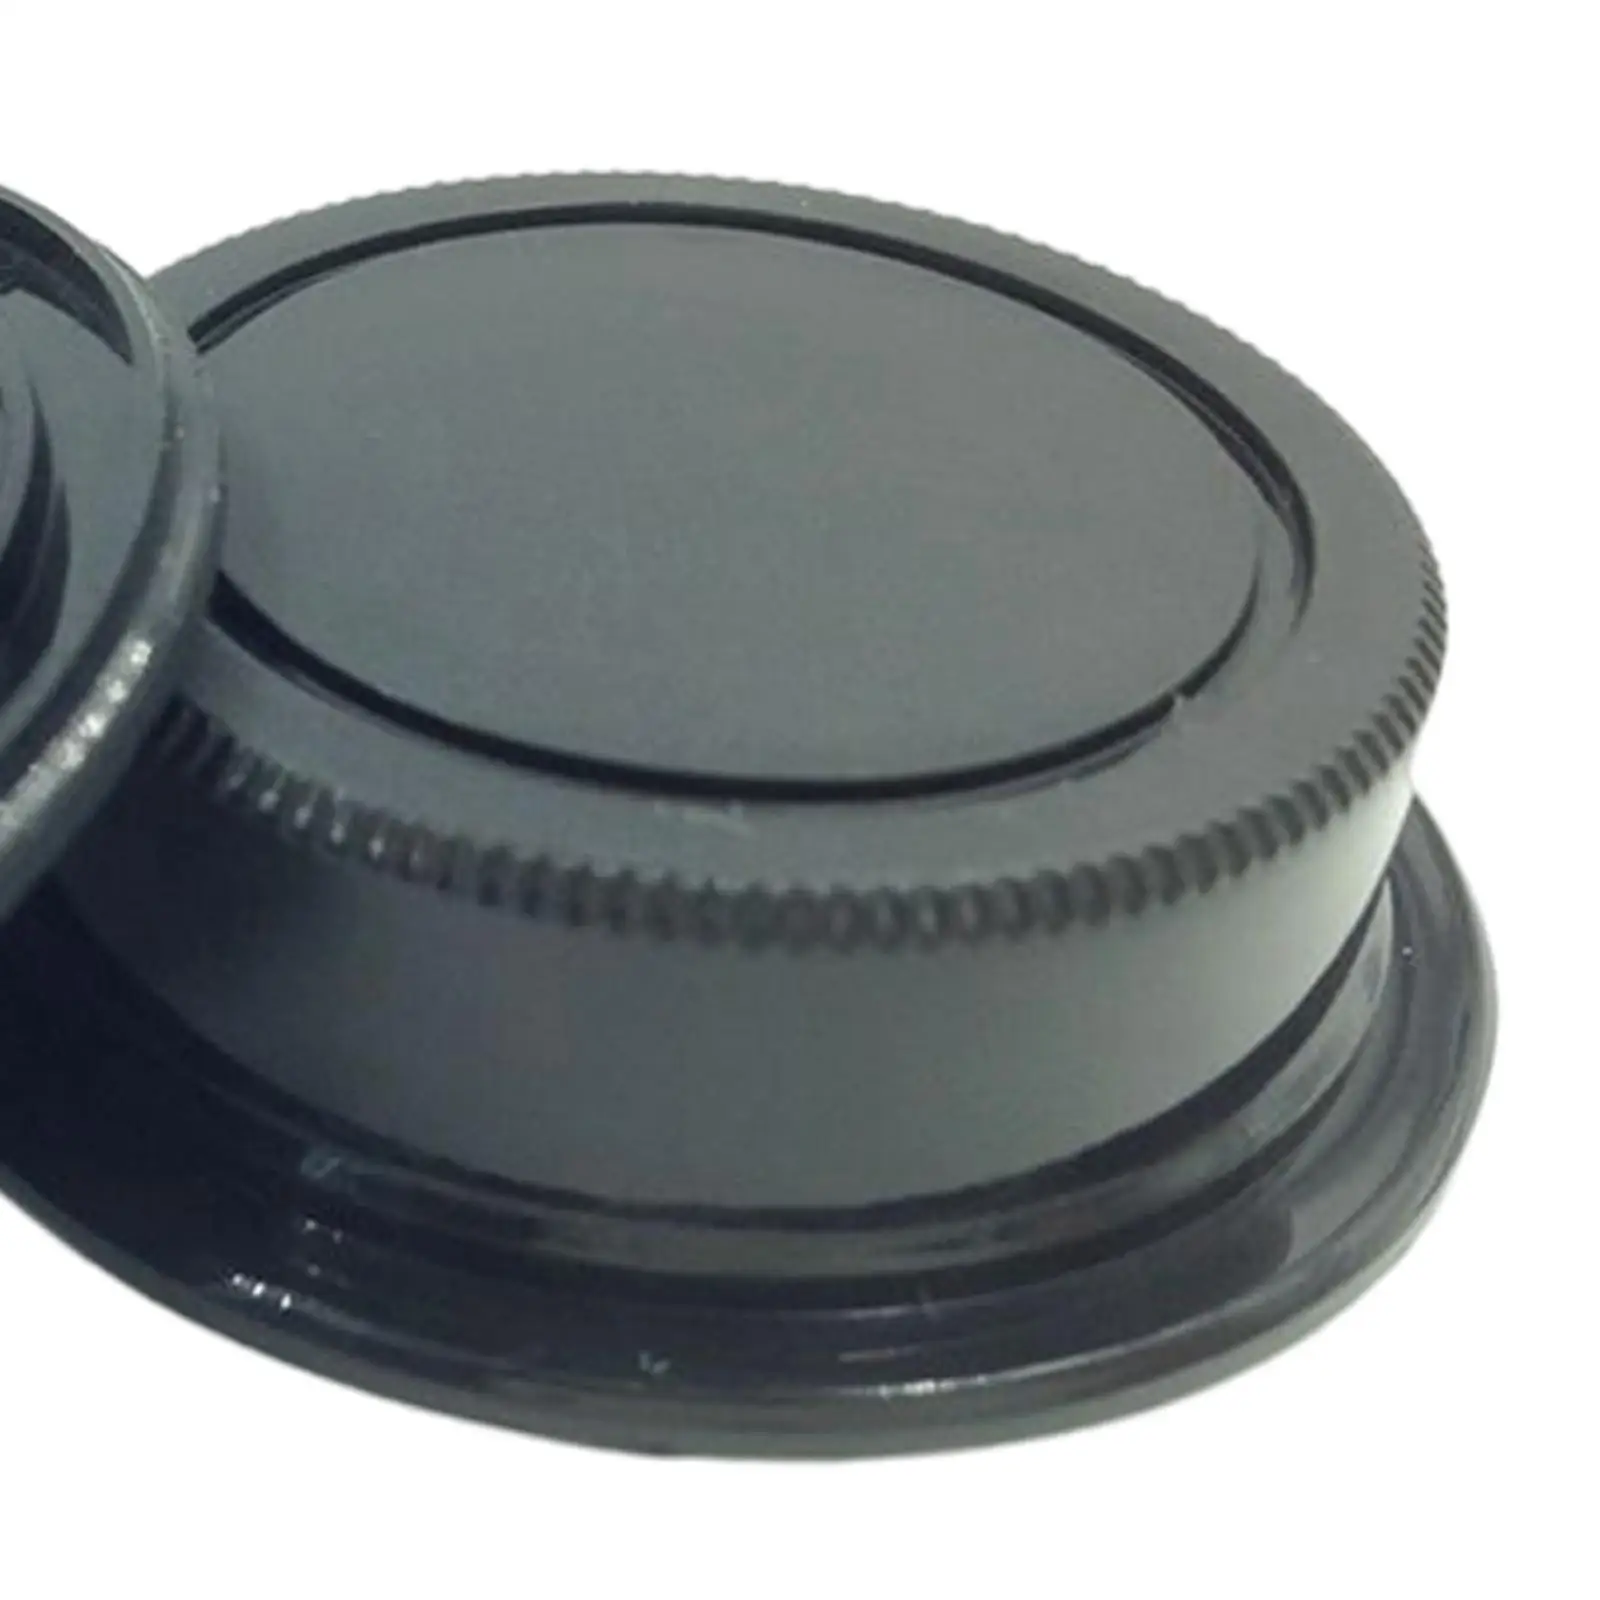 Plastic Camera Body and Rear Lens Caps Body Protector Set for Pentax Q Q7 Q10 Q S1 qs1 Cameras and Q Mount Lenses Black